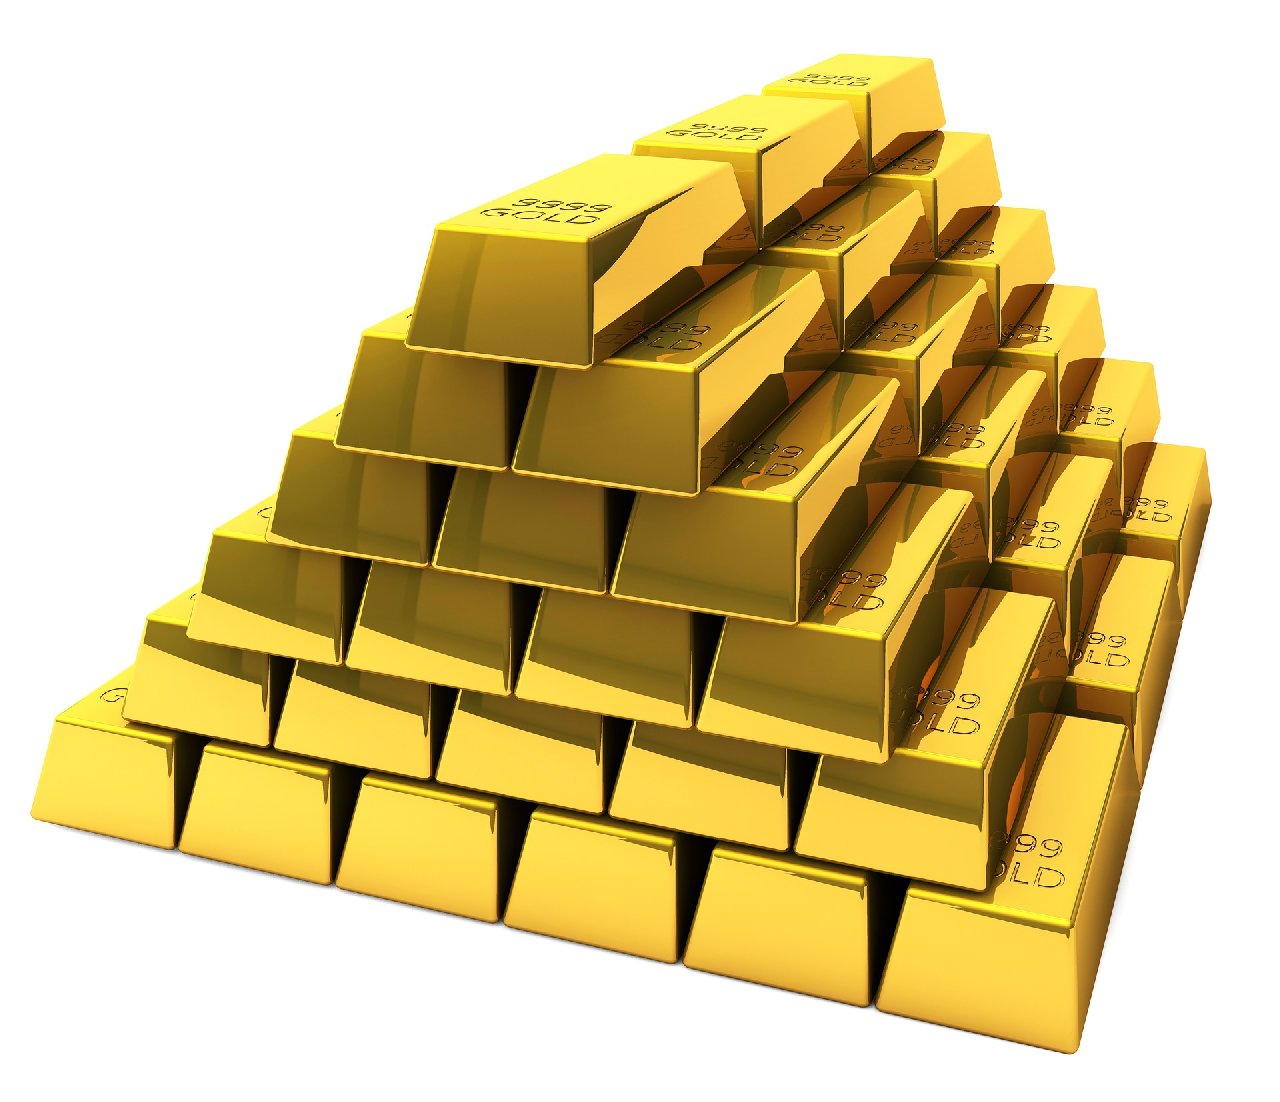 Altın fiyatları üç ayın zirvesine çıktı